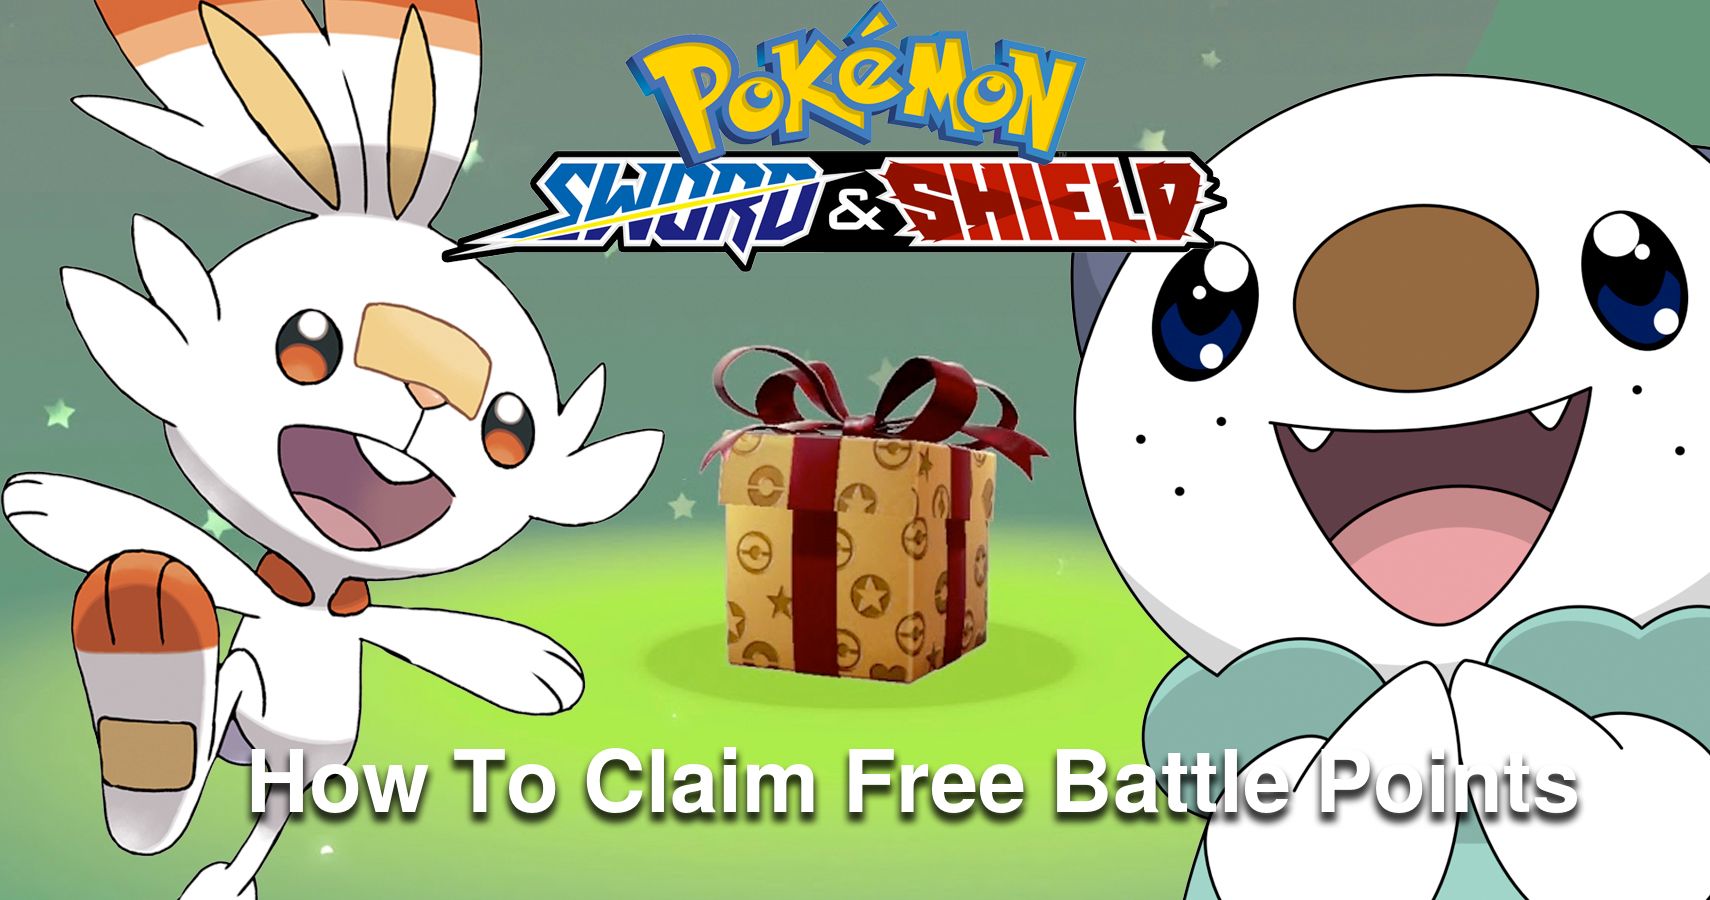 Pokémon Sword & Shield How To Claim Free Battle Points